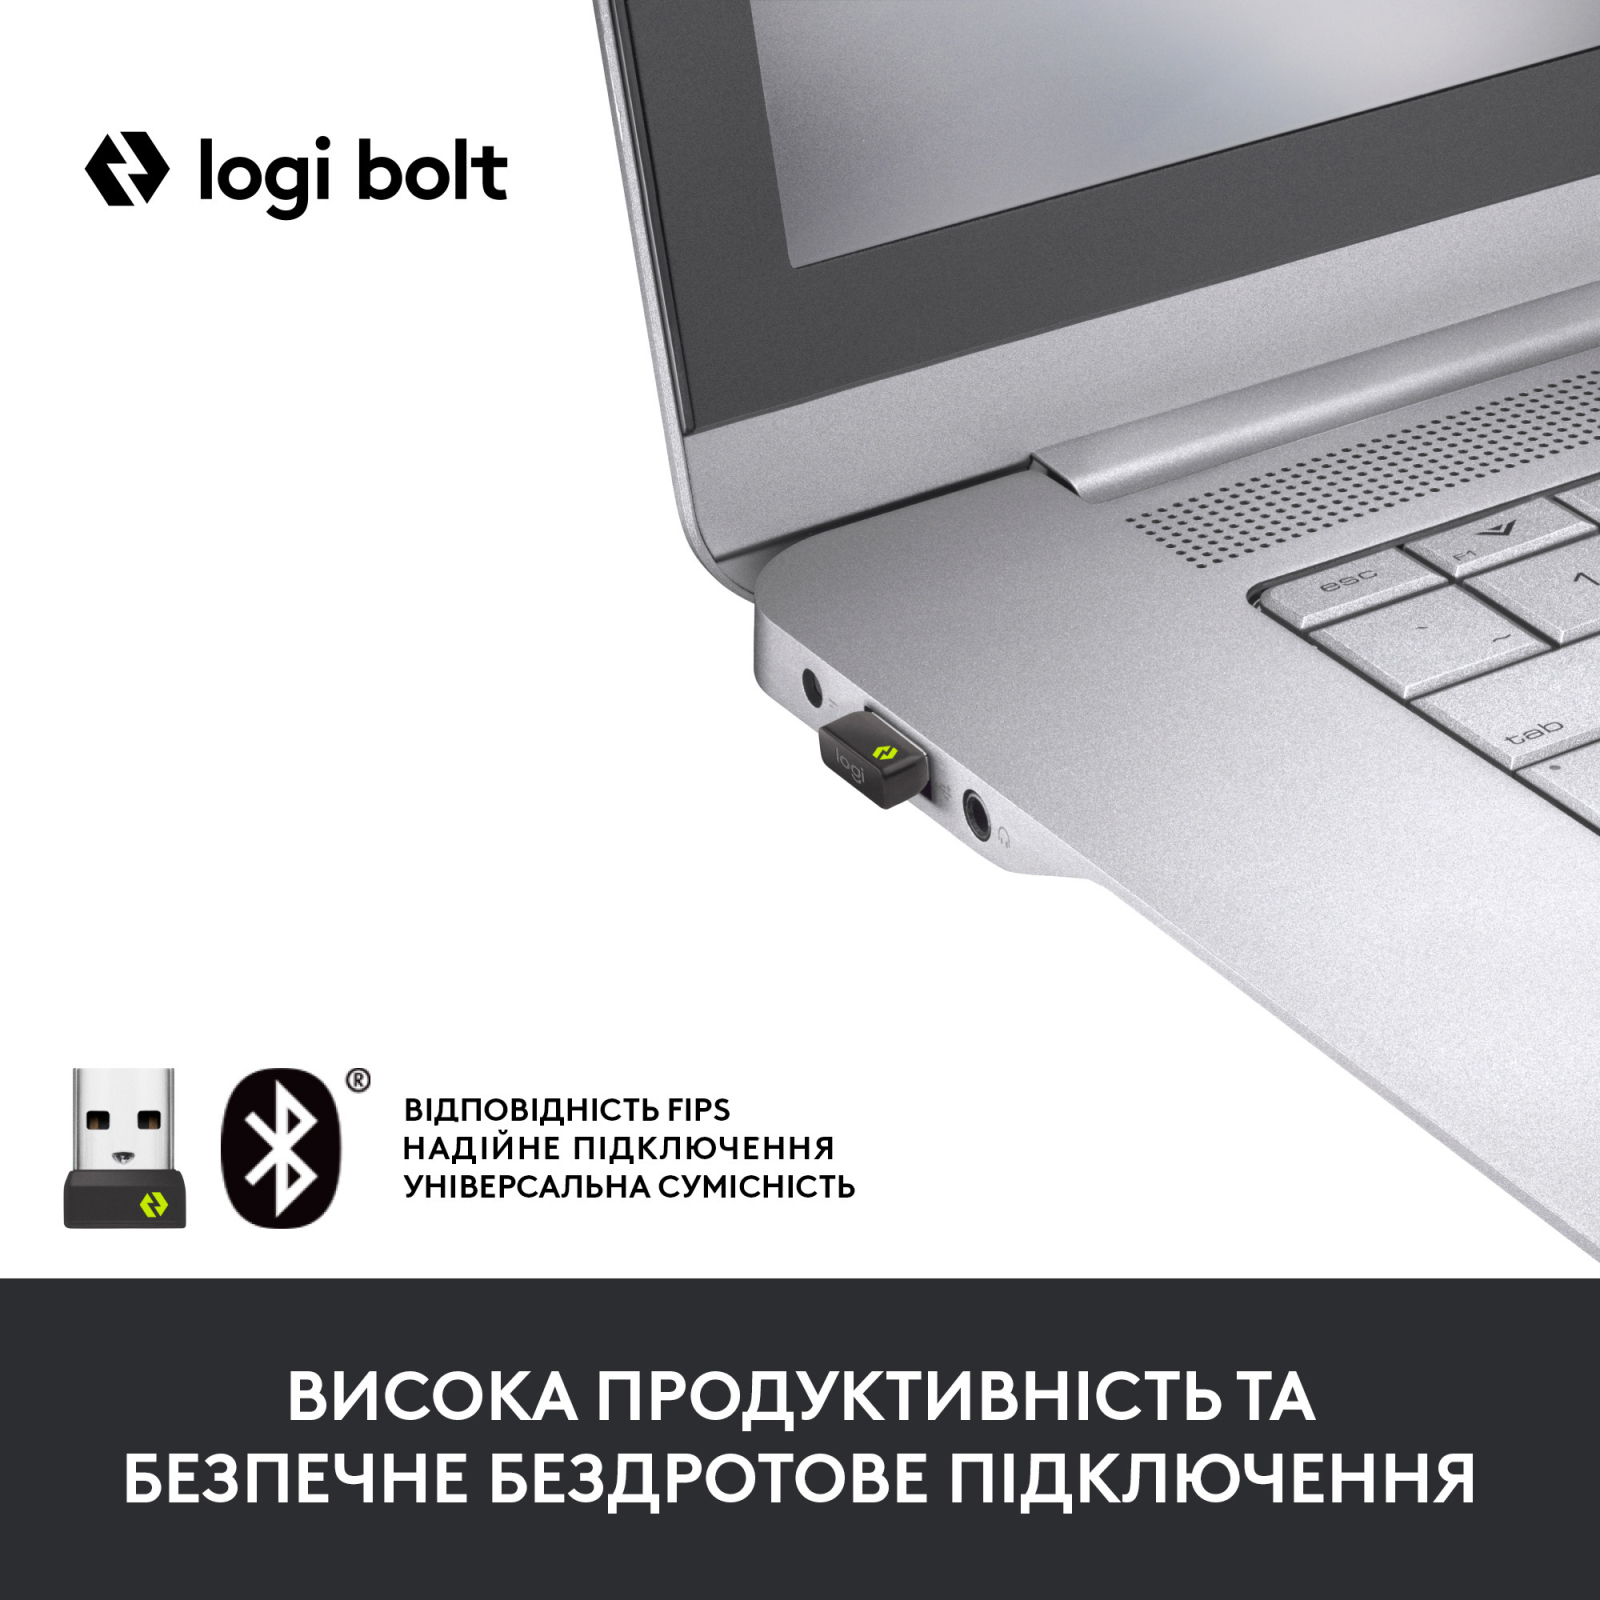 Мышка Logitech Signature M650 Wireless for Business Graphite (910-006274) изображение 2